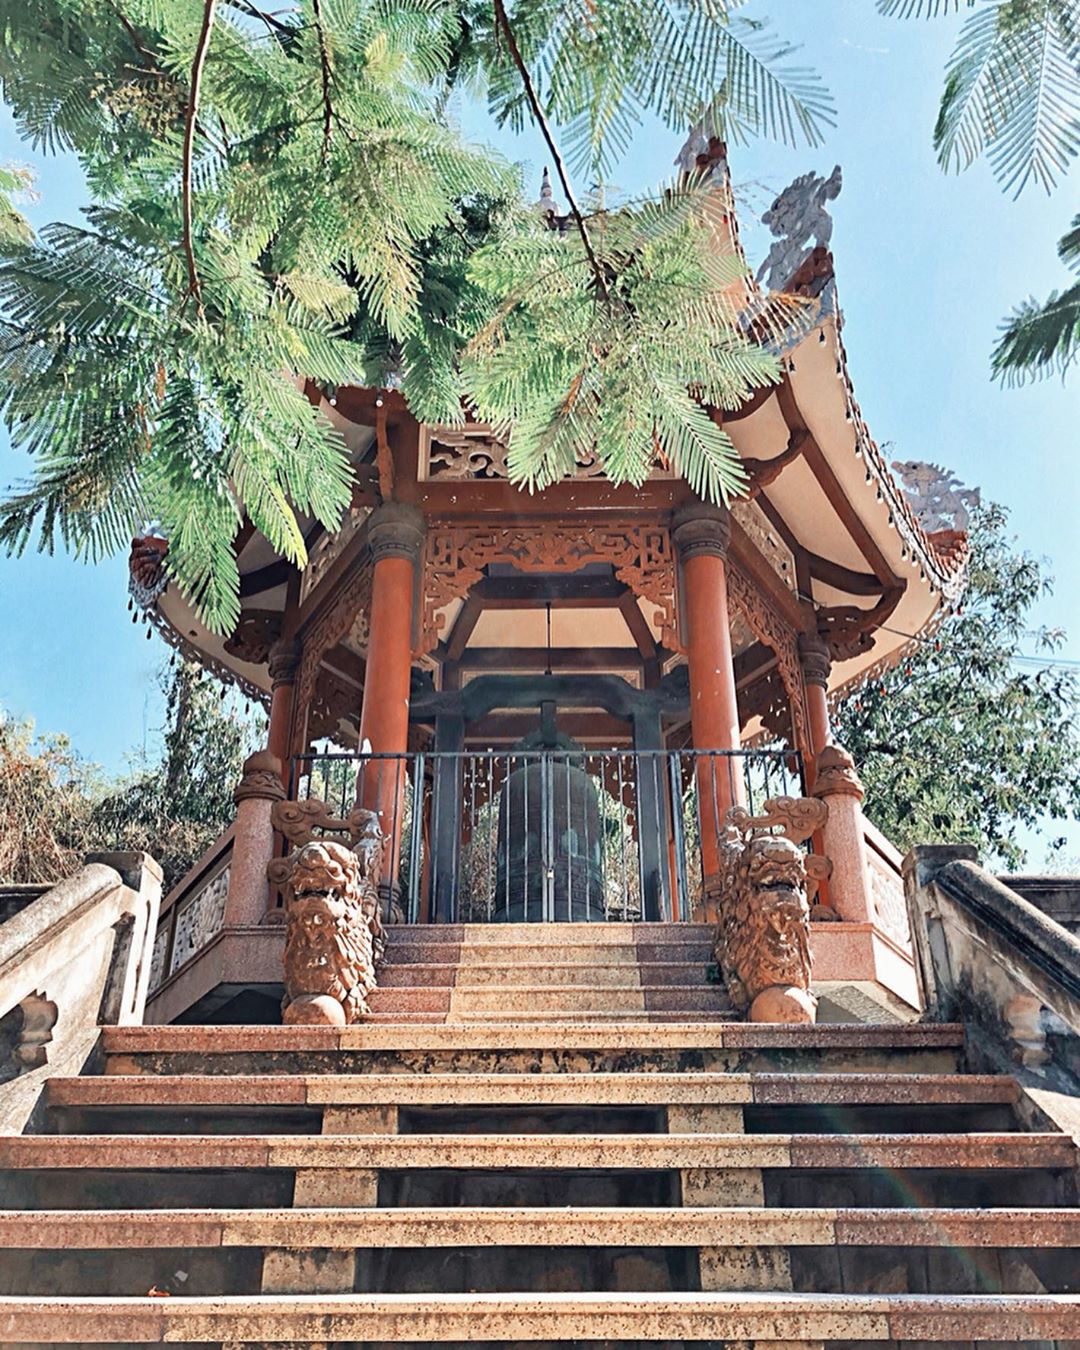 Tháp chuông 1,5 tấn trong khuôn viên chùa 